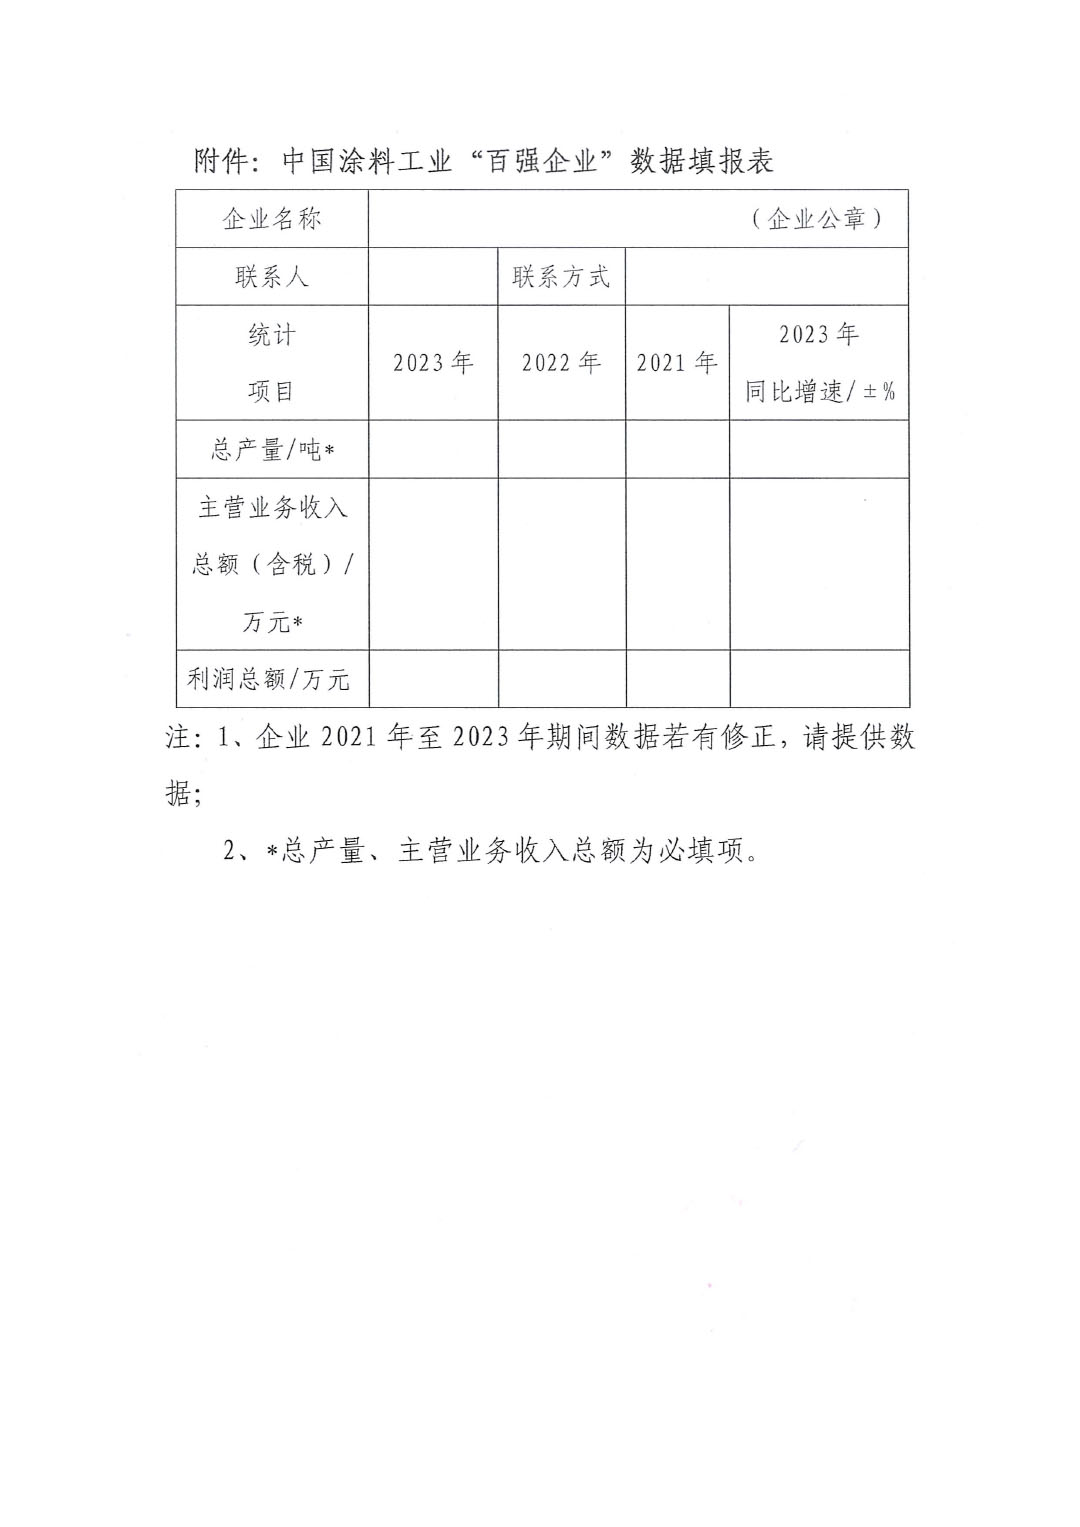 關于2023年度中國涂料工業“百強企業”調研工作的通知(2)(1)-3